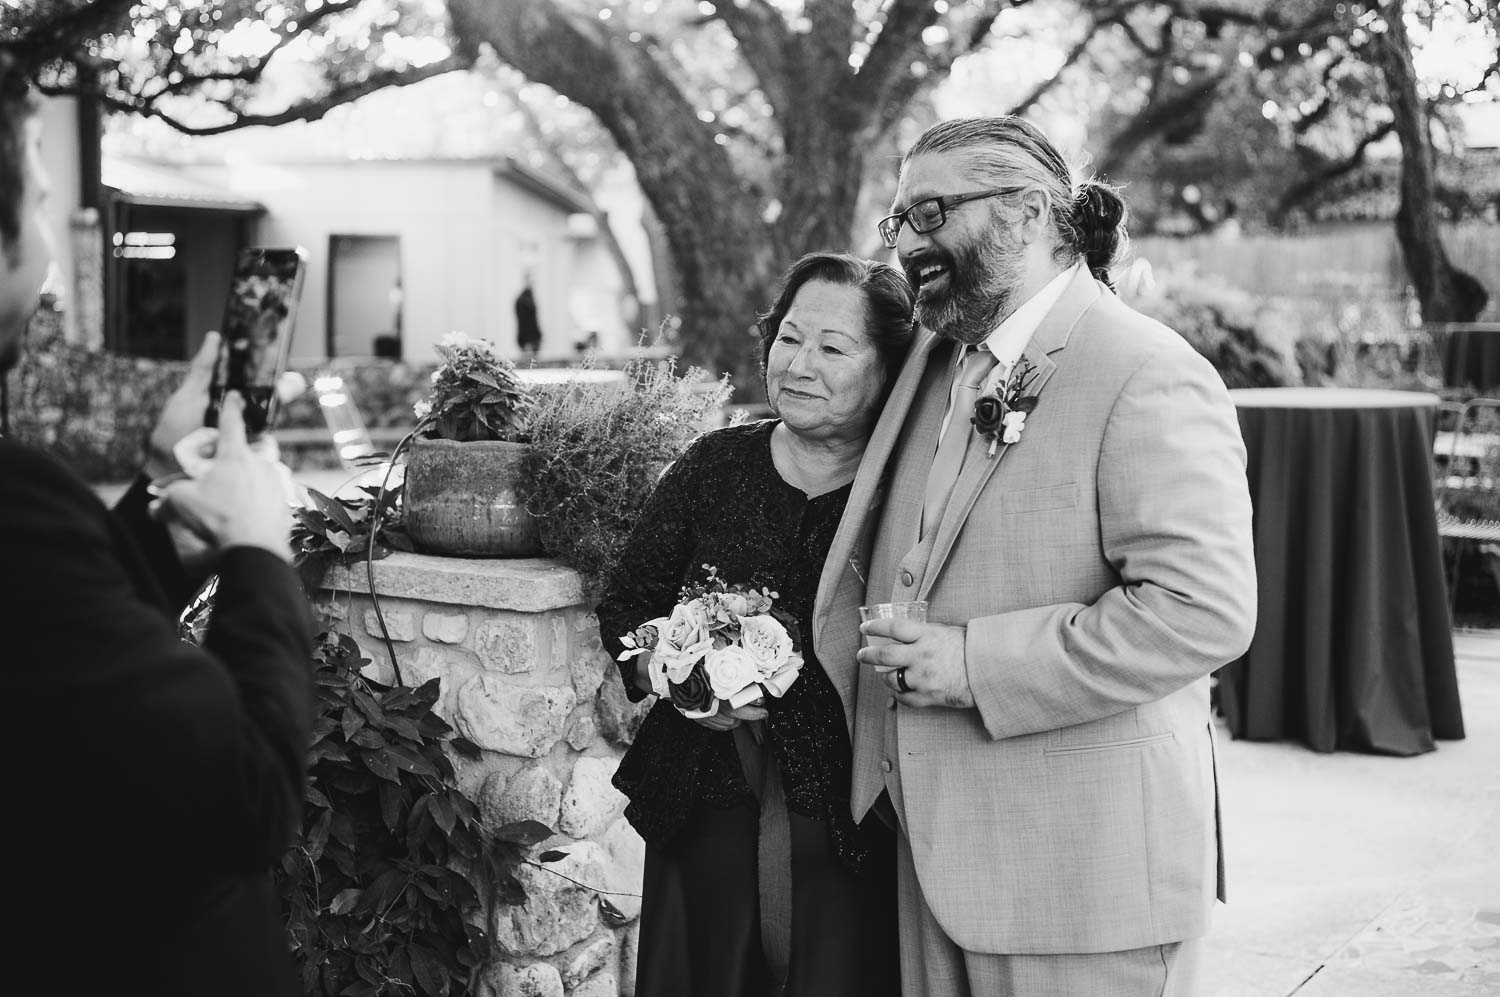 017 The Veranda Wedding + Reception in San Antonio Texas Philip Thomas Photography